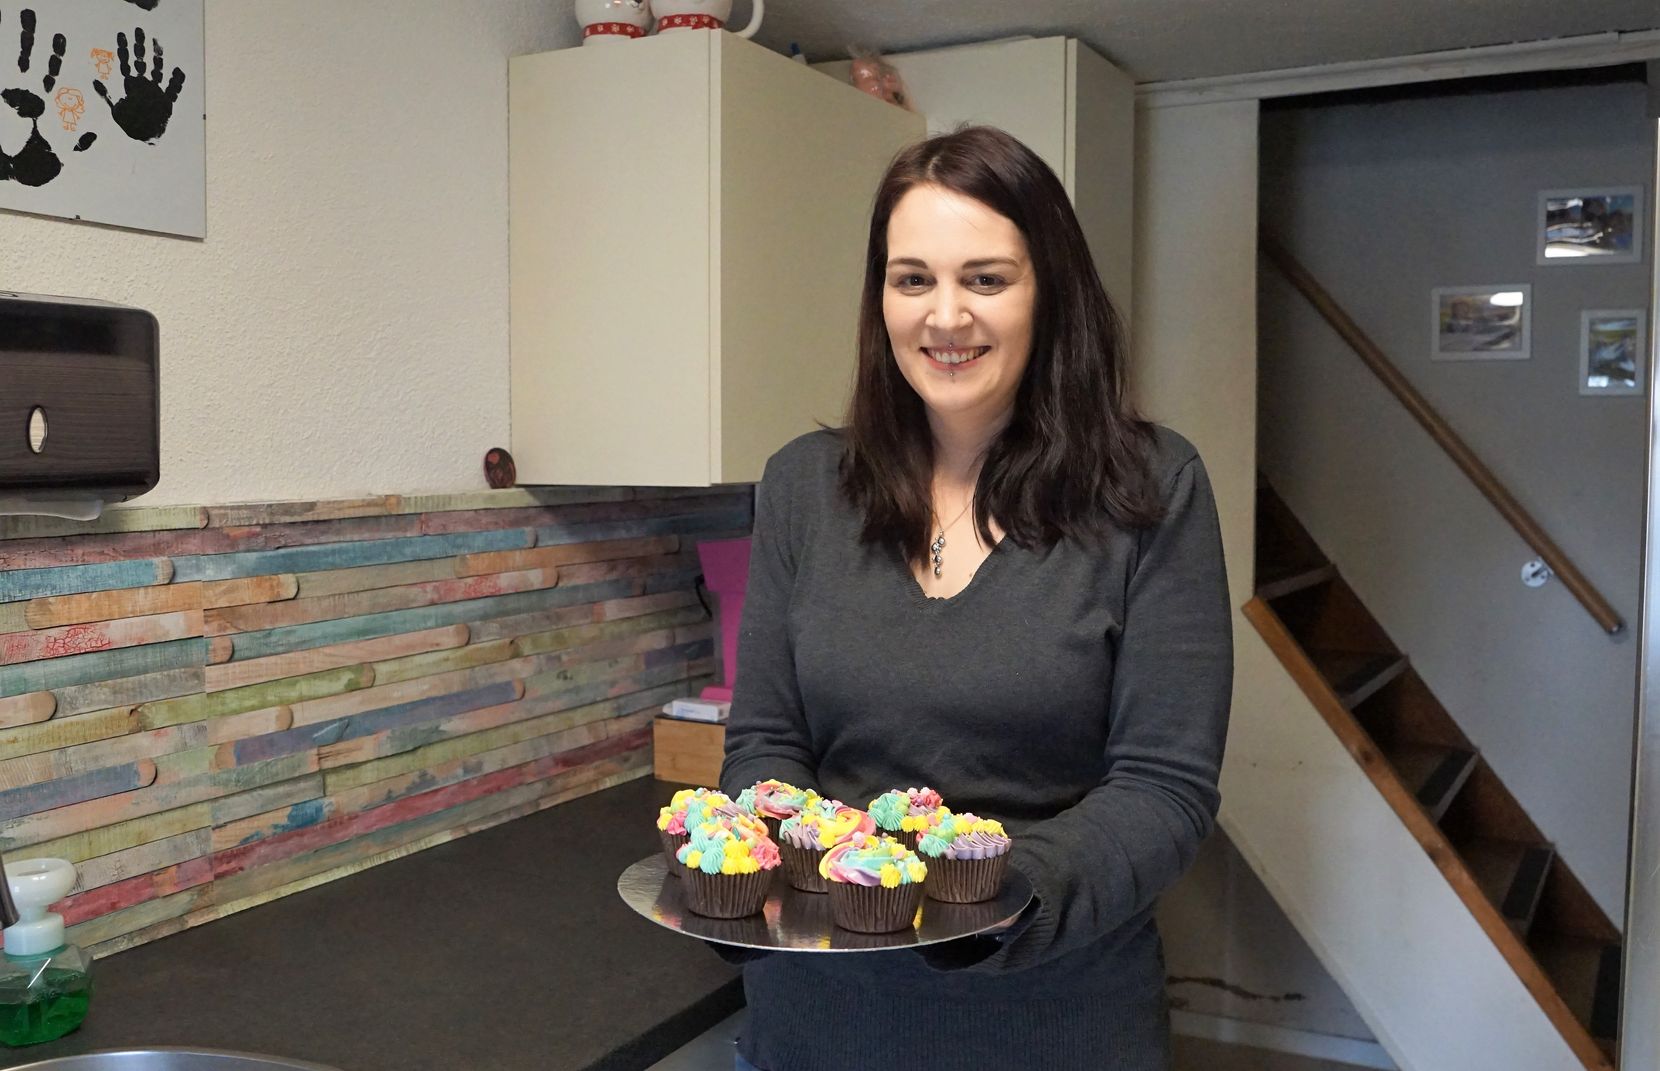 Man sieht eine Frau in einer Küche, die einen Teller mit schön dekorierten Cupcakes trägt.